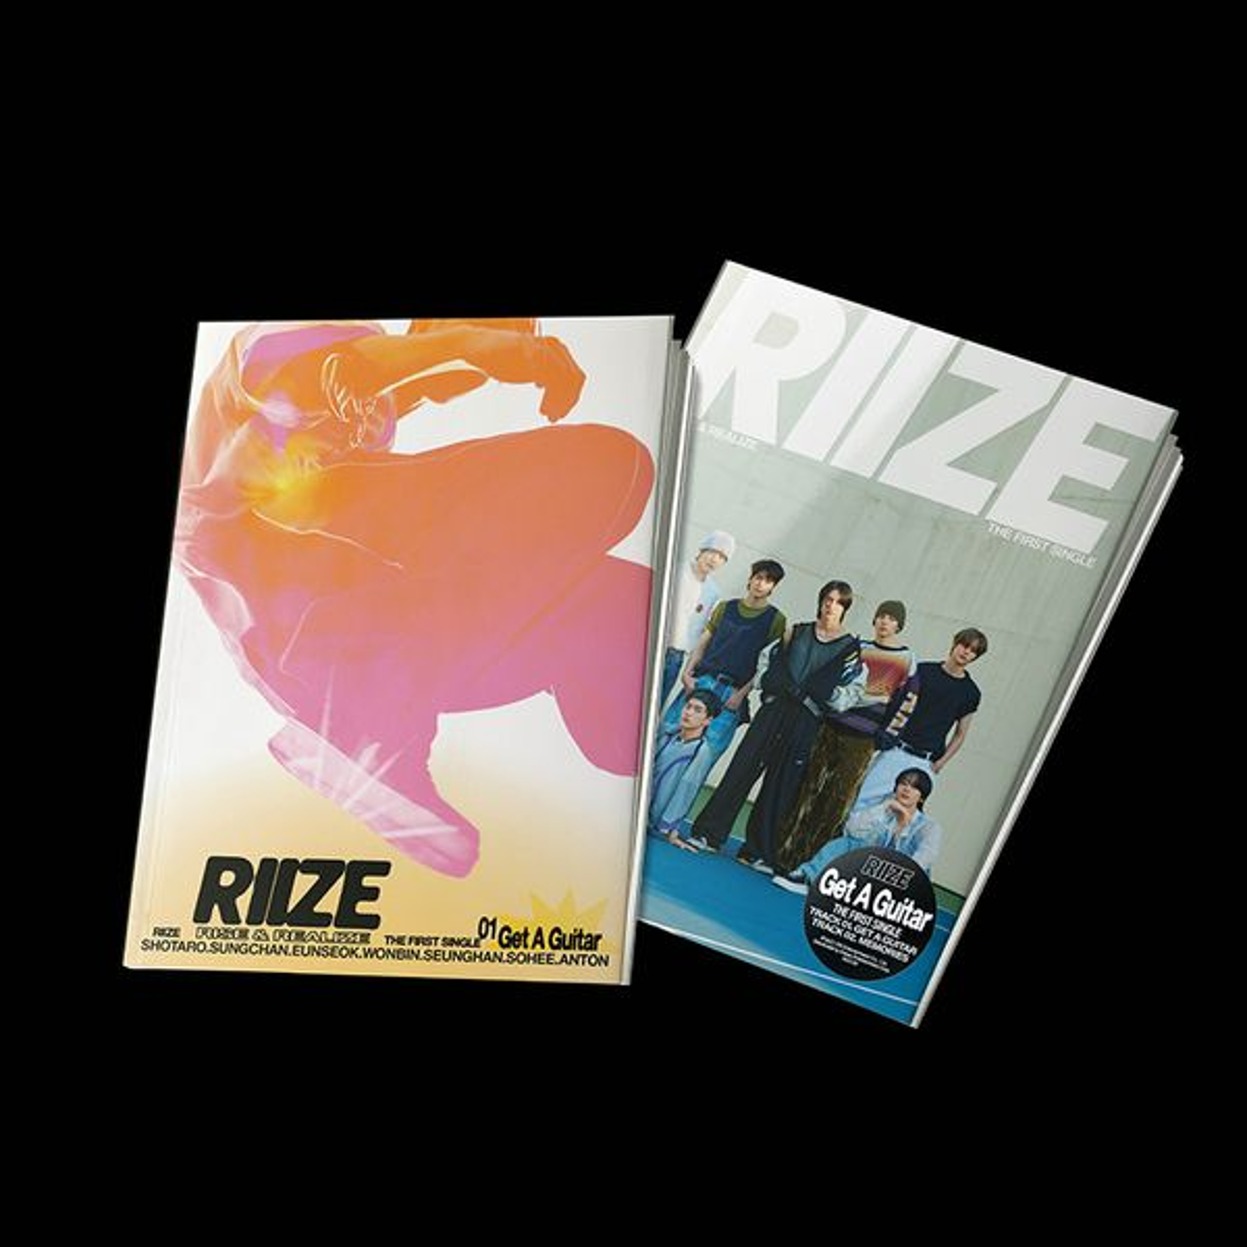 라이즈 (RIIZE) - 싱글앨범 1집 [Get A Guitar] (랜덤버전)